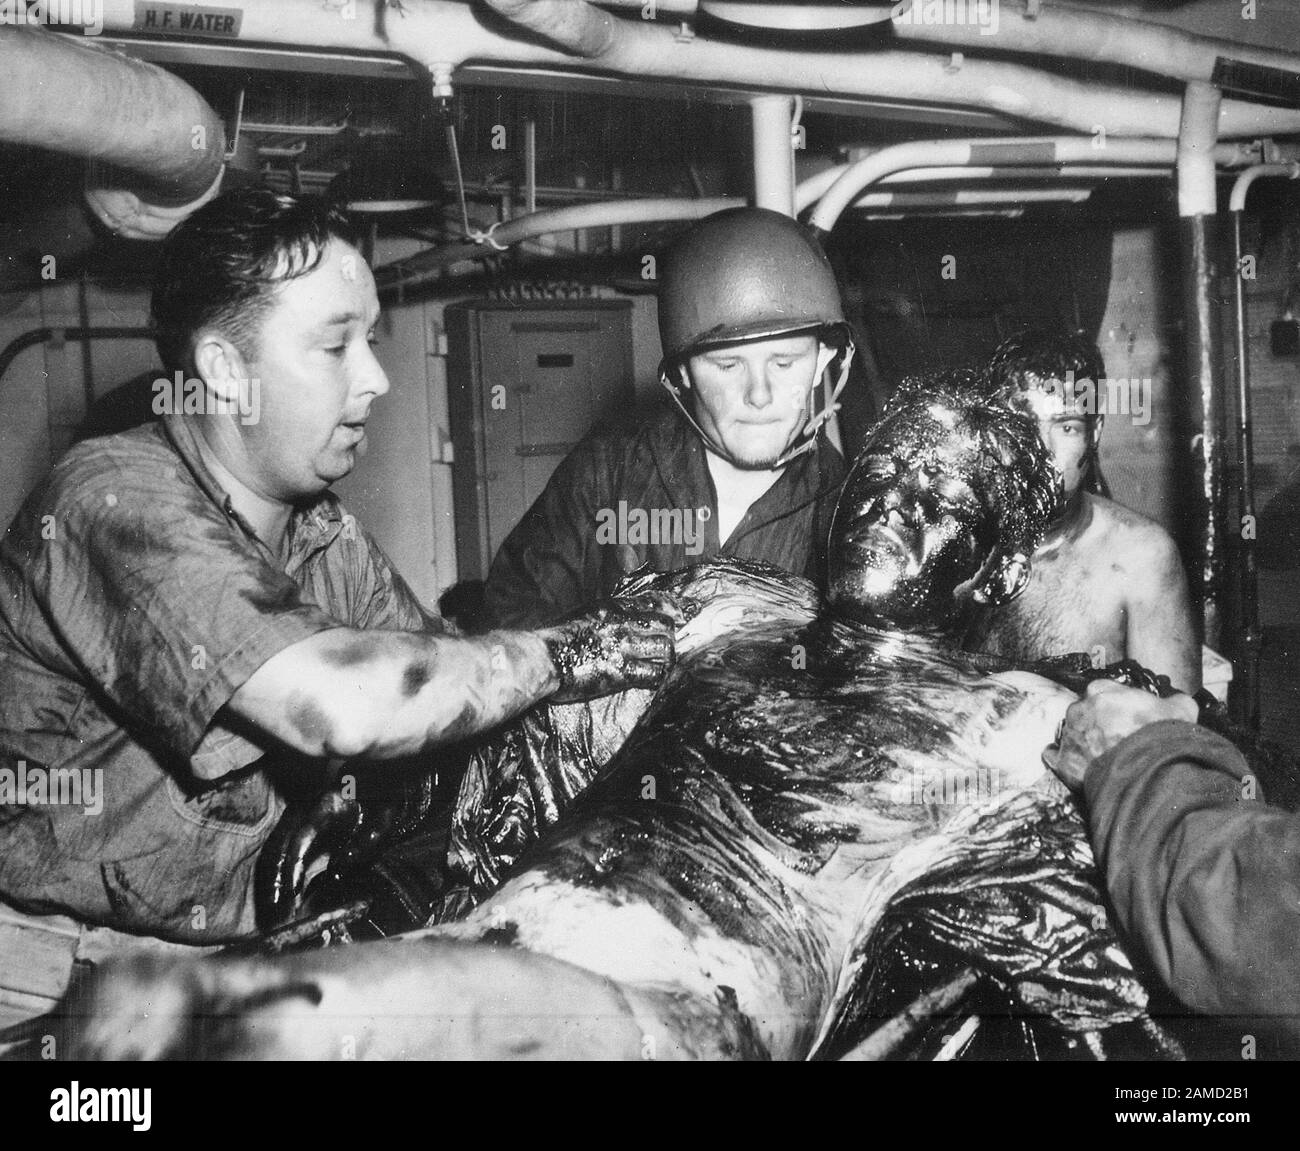 Seemann der US-Marine entspannt sich, als zwei Küstenwachtleute eine dicke Ölschicht aus seinem Körper kratzen. Das Überlebende Schiff, die "USS LANSDALE", wurde von Nazi-Flugzeugen vor der Küste Nordafrikas versenkt. April 1944 Stockfoto